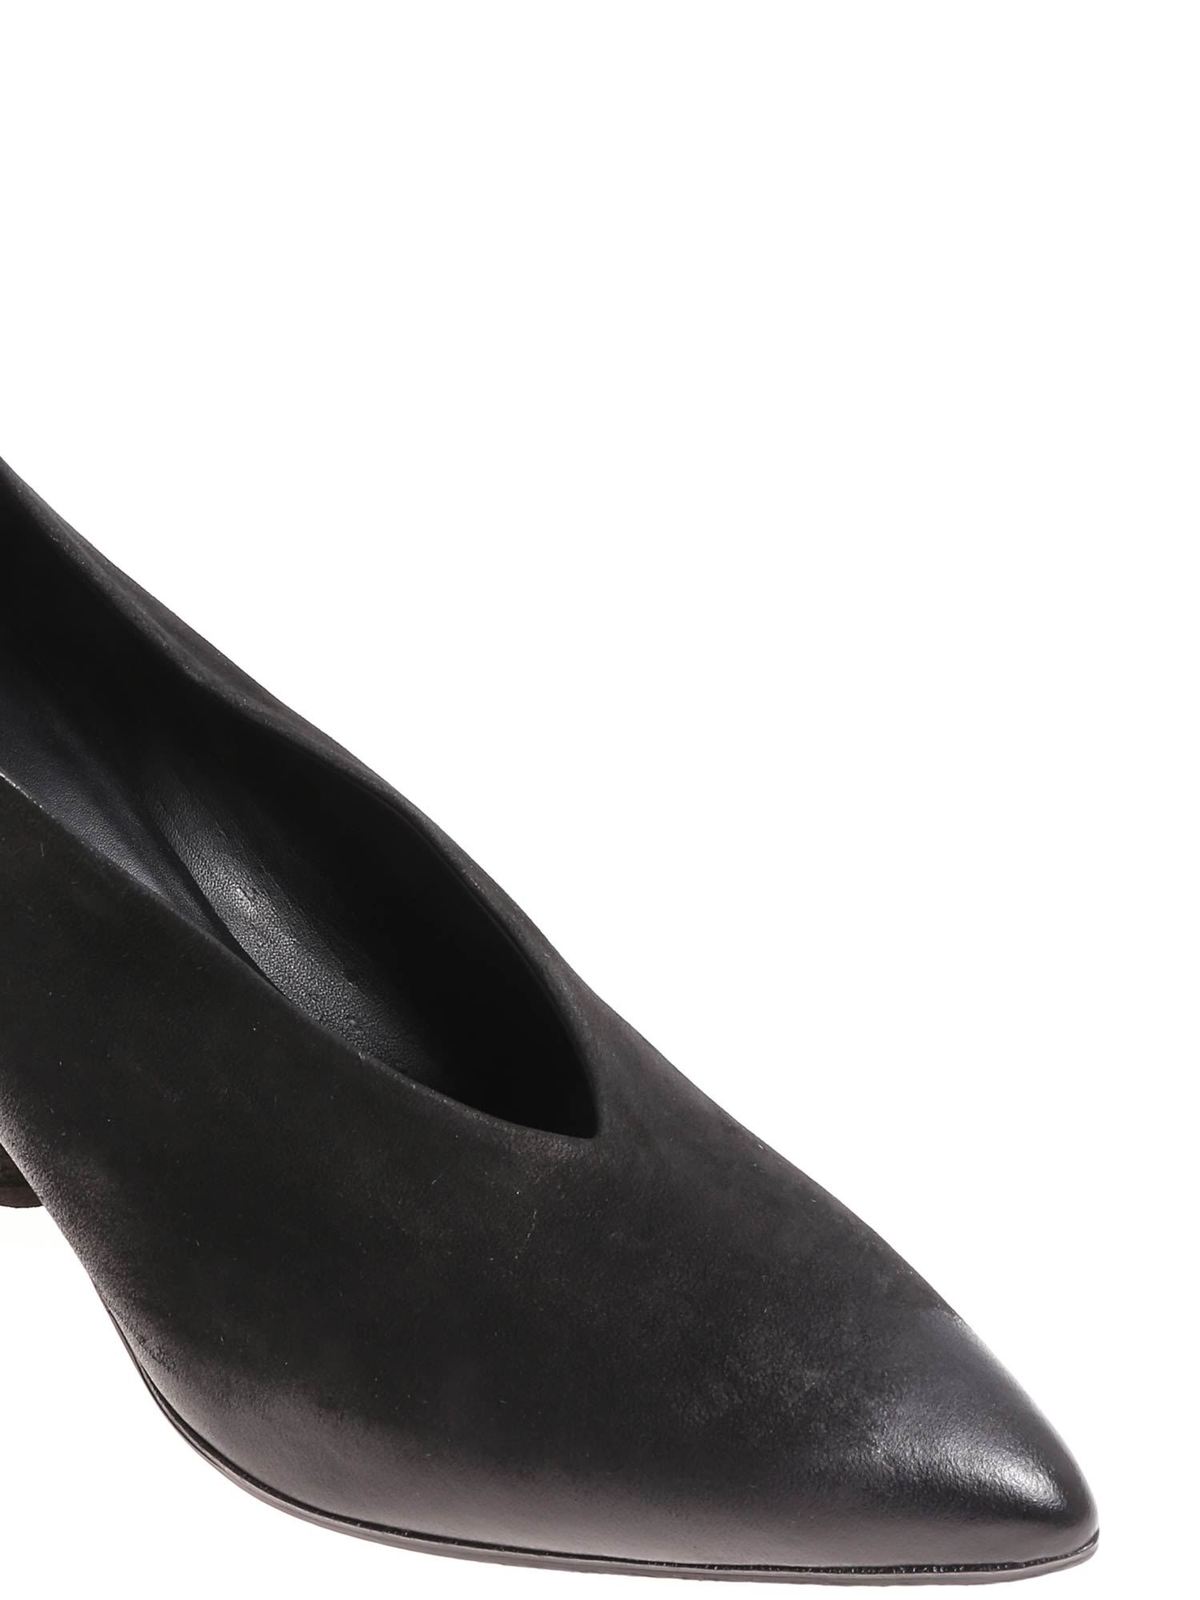 Halmanera - Handmade black Rouge01 shoes - مجلسی پاشنه 3 سانتی -  ROUGE01BANDOLERONERO